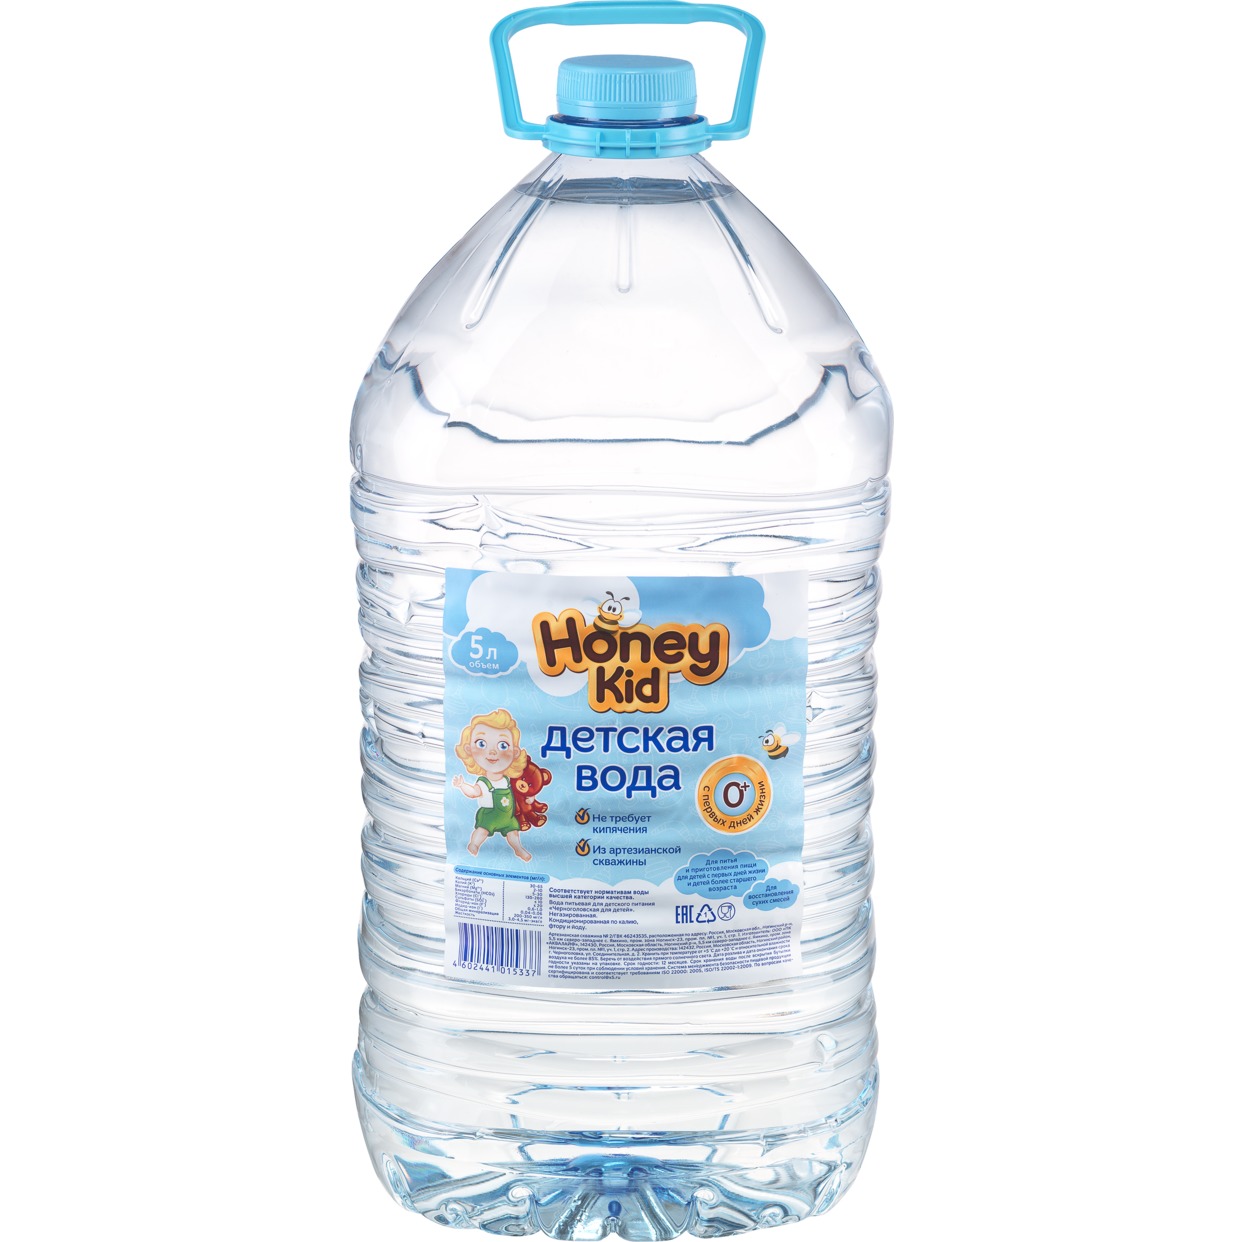 Вода питьевая для детского питания «Для детей», негазированная, 5,0л по акции в Пятерочке